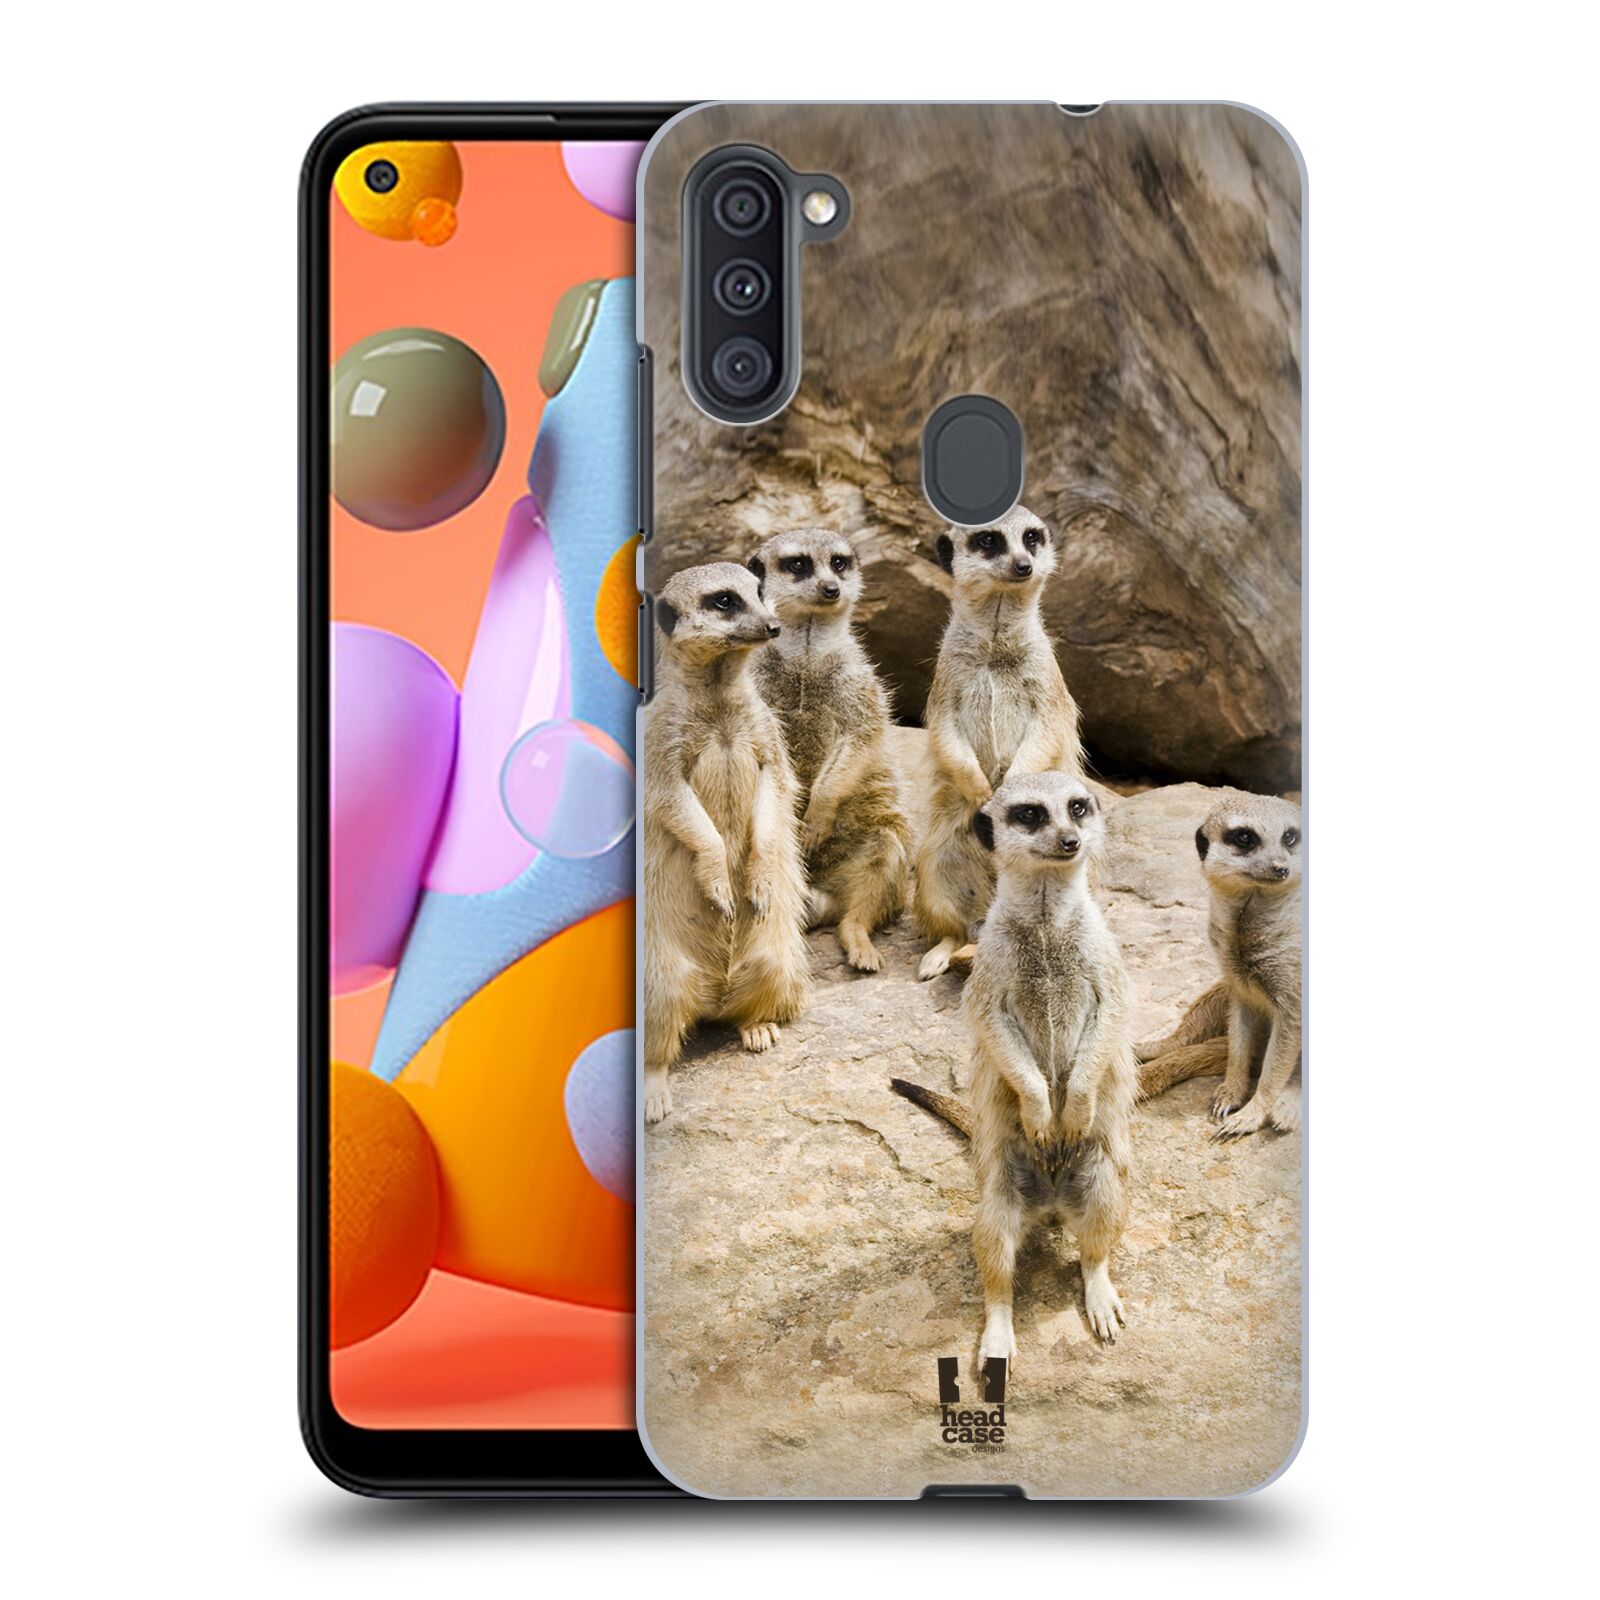 Zadní obal pro mobil Samsung Galaxy A11 - HEAD CASE - Svět zvířat roztomilé surikaty